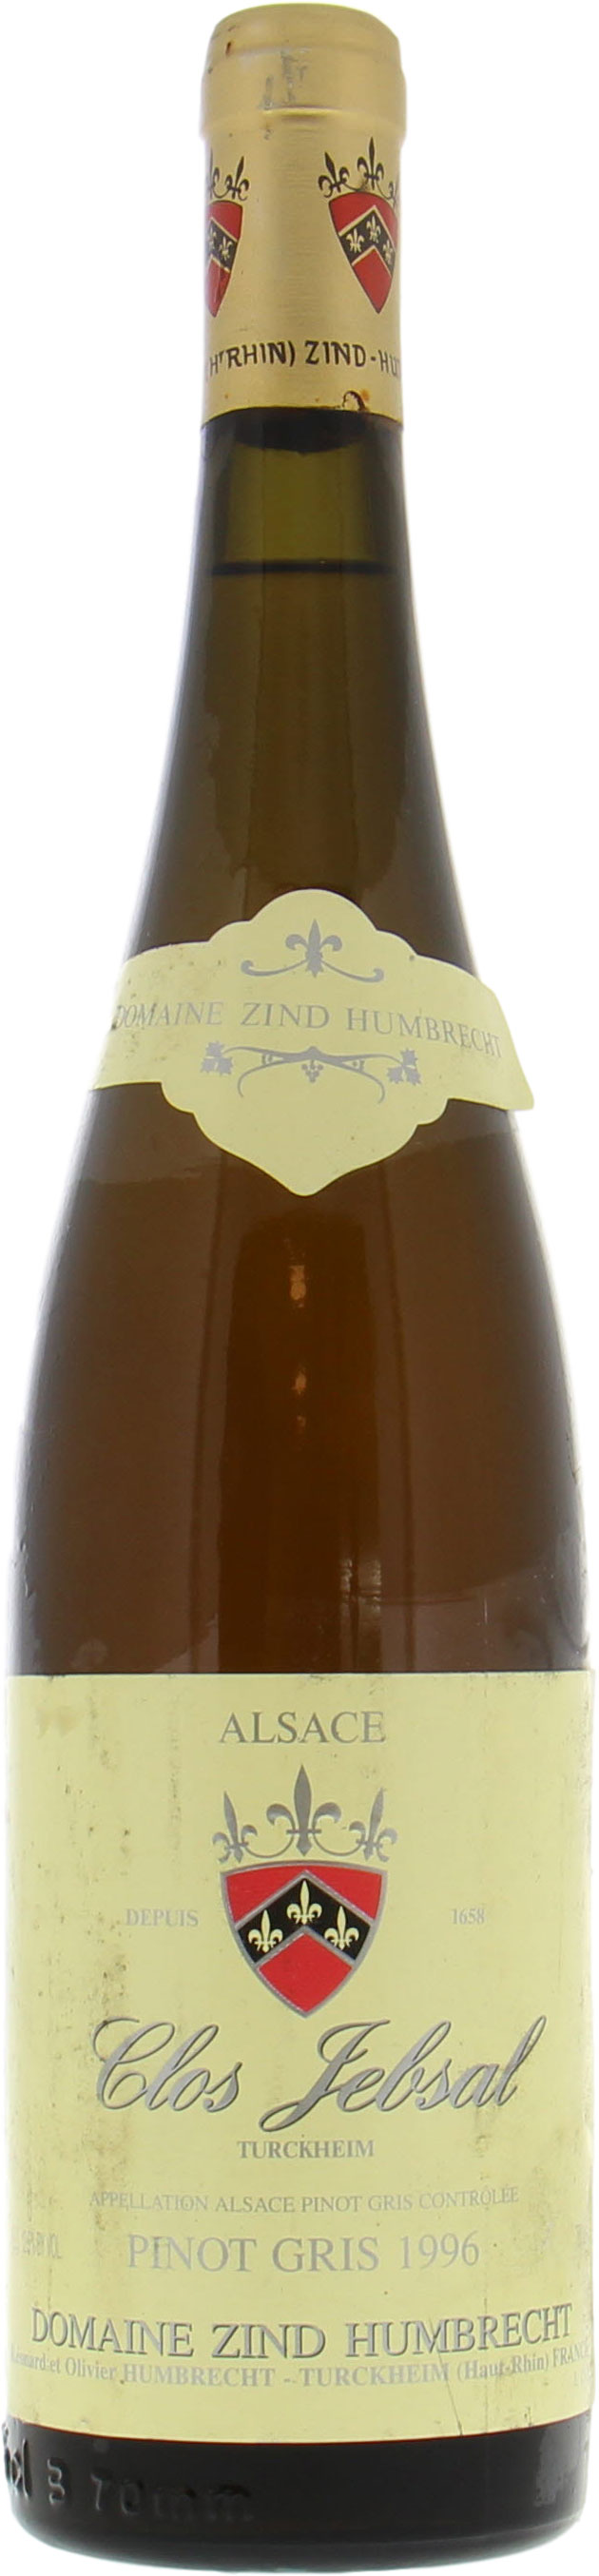 Zind Humbrecht - Pinot Gris Clos Jebsal 1995 Perfect